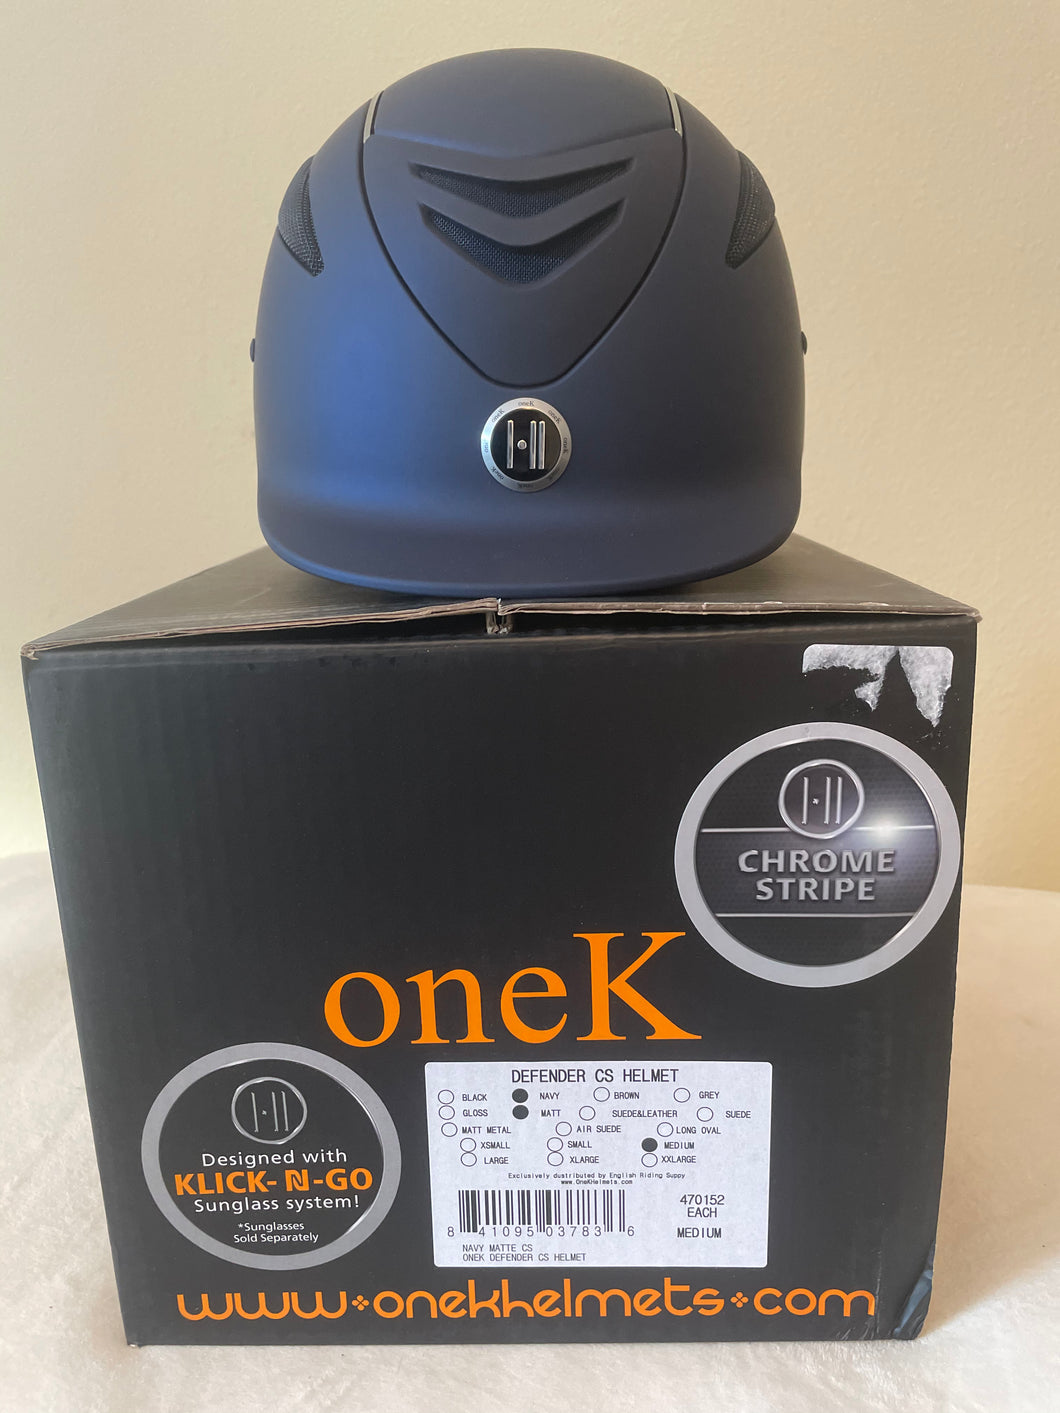 One K Defender Helmet, Navy, Chrome Stripe, Medium (55-56cm/6 7/8-7) - New in Box